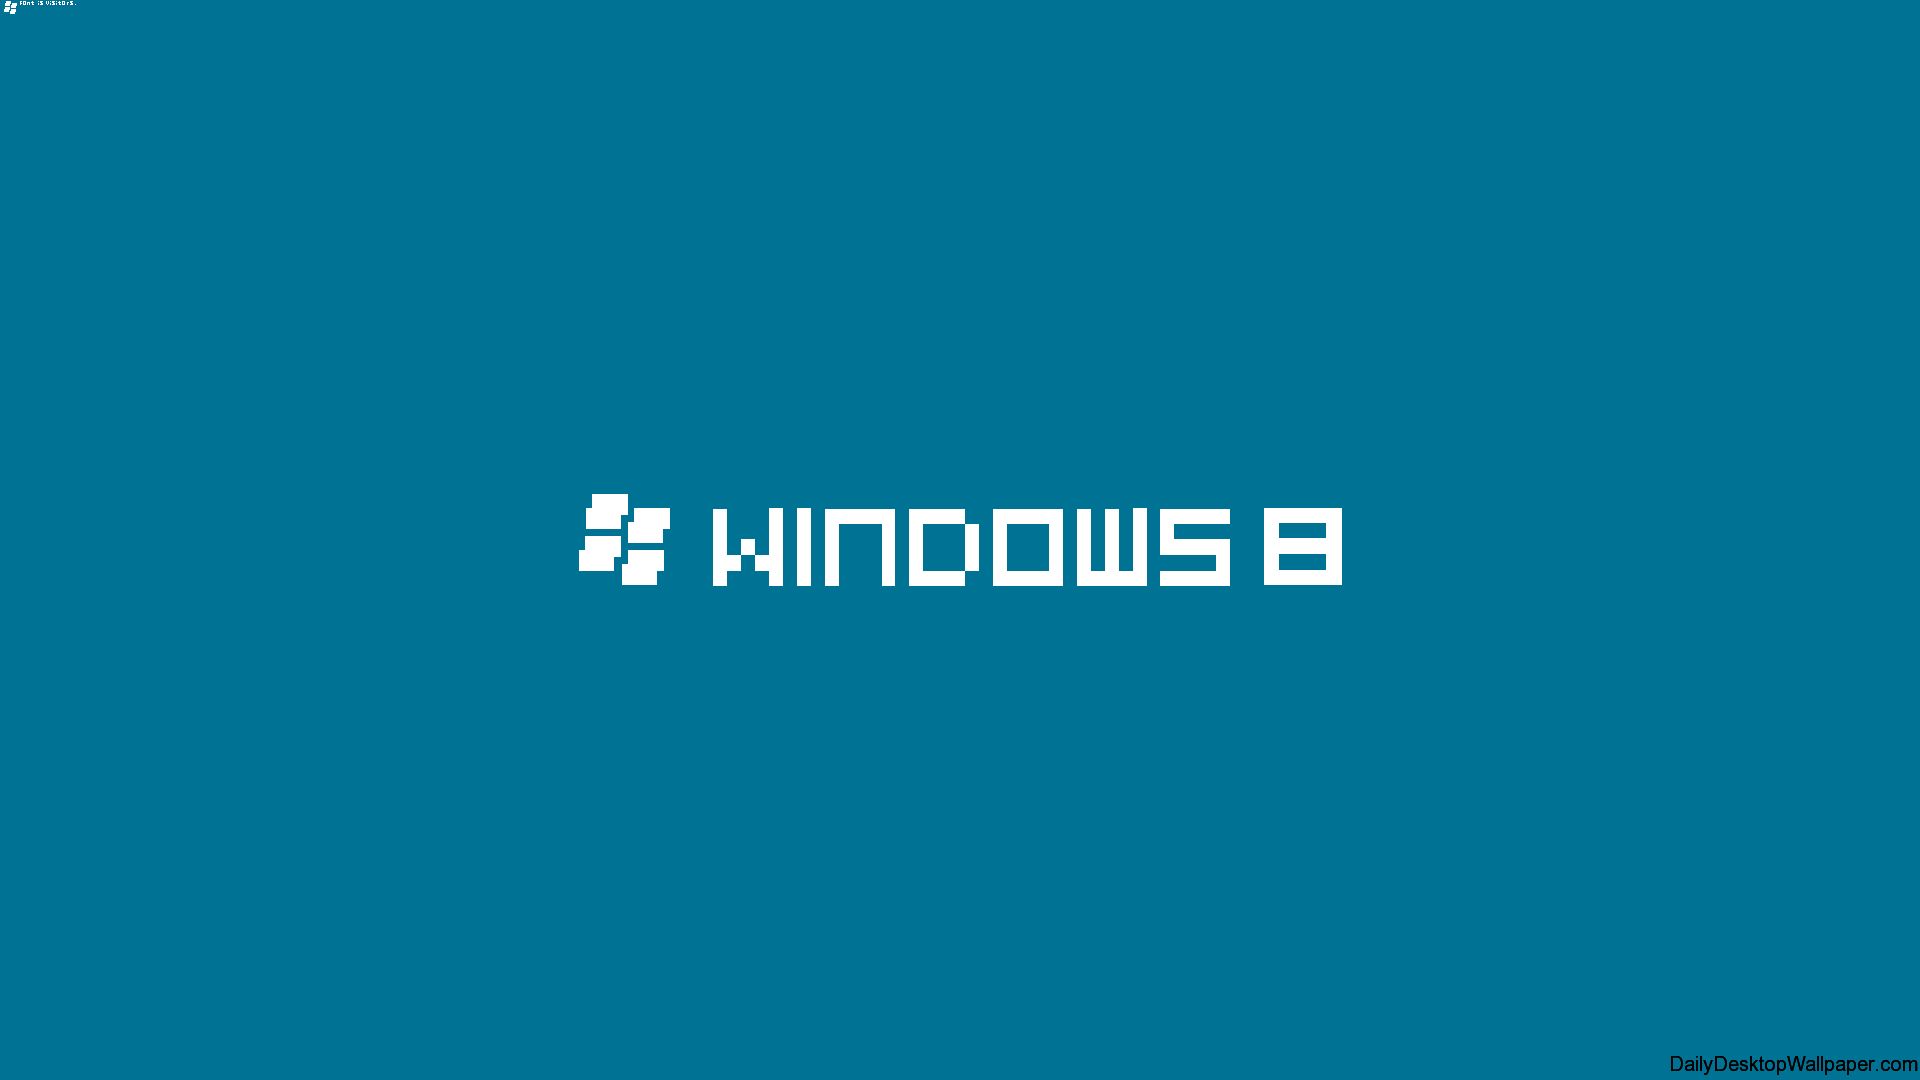 Скачать обои бесплатно Windows 8, Технологии, Окна картинка на рабочий стол ПК